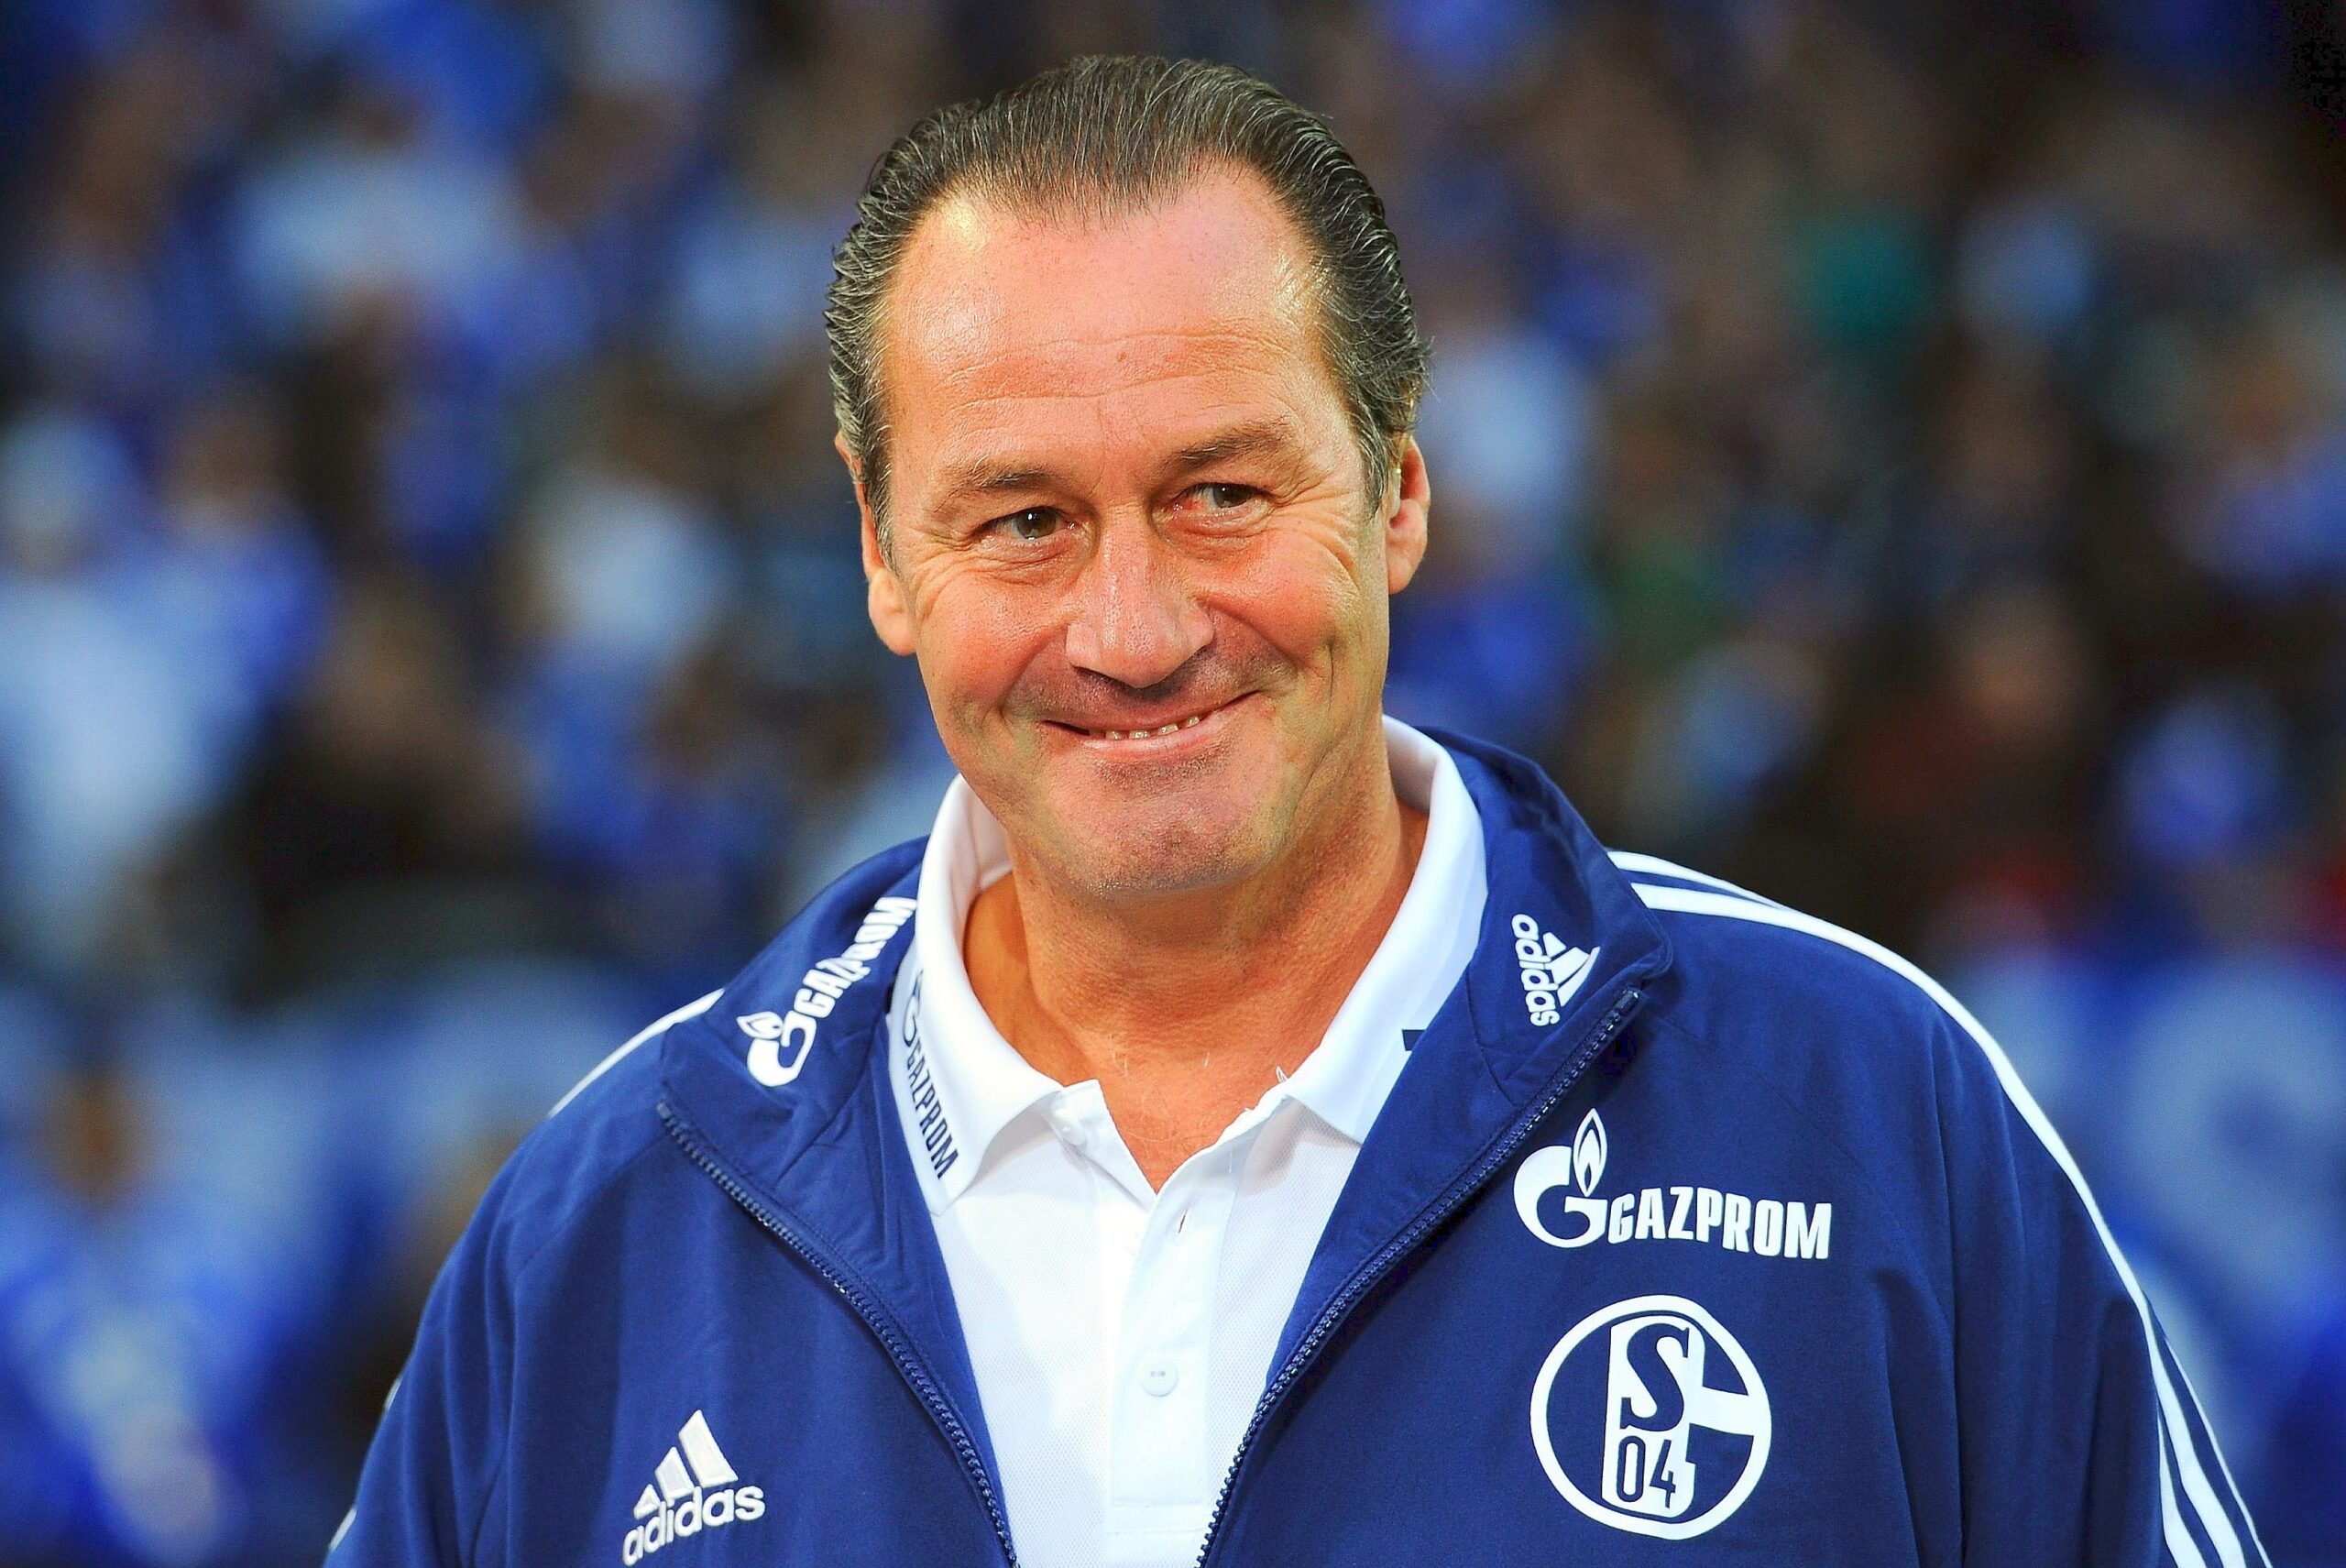 Der FC Schalke 04 verlor sein Heimspiel gegen den 1. FC Kaiserslautern 1:2.